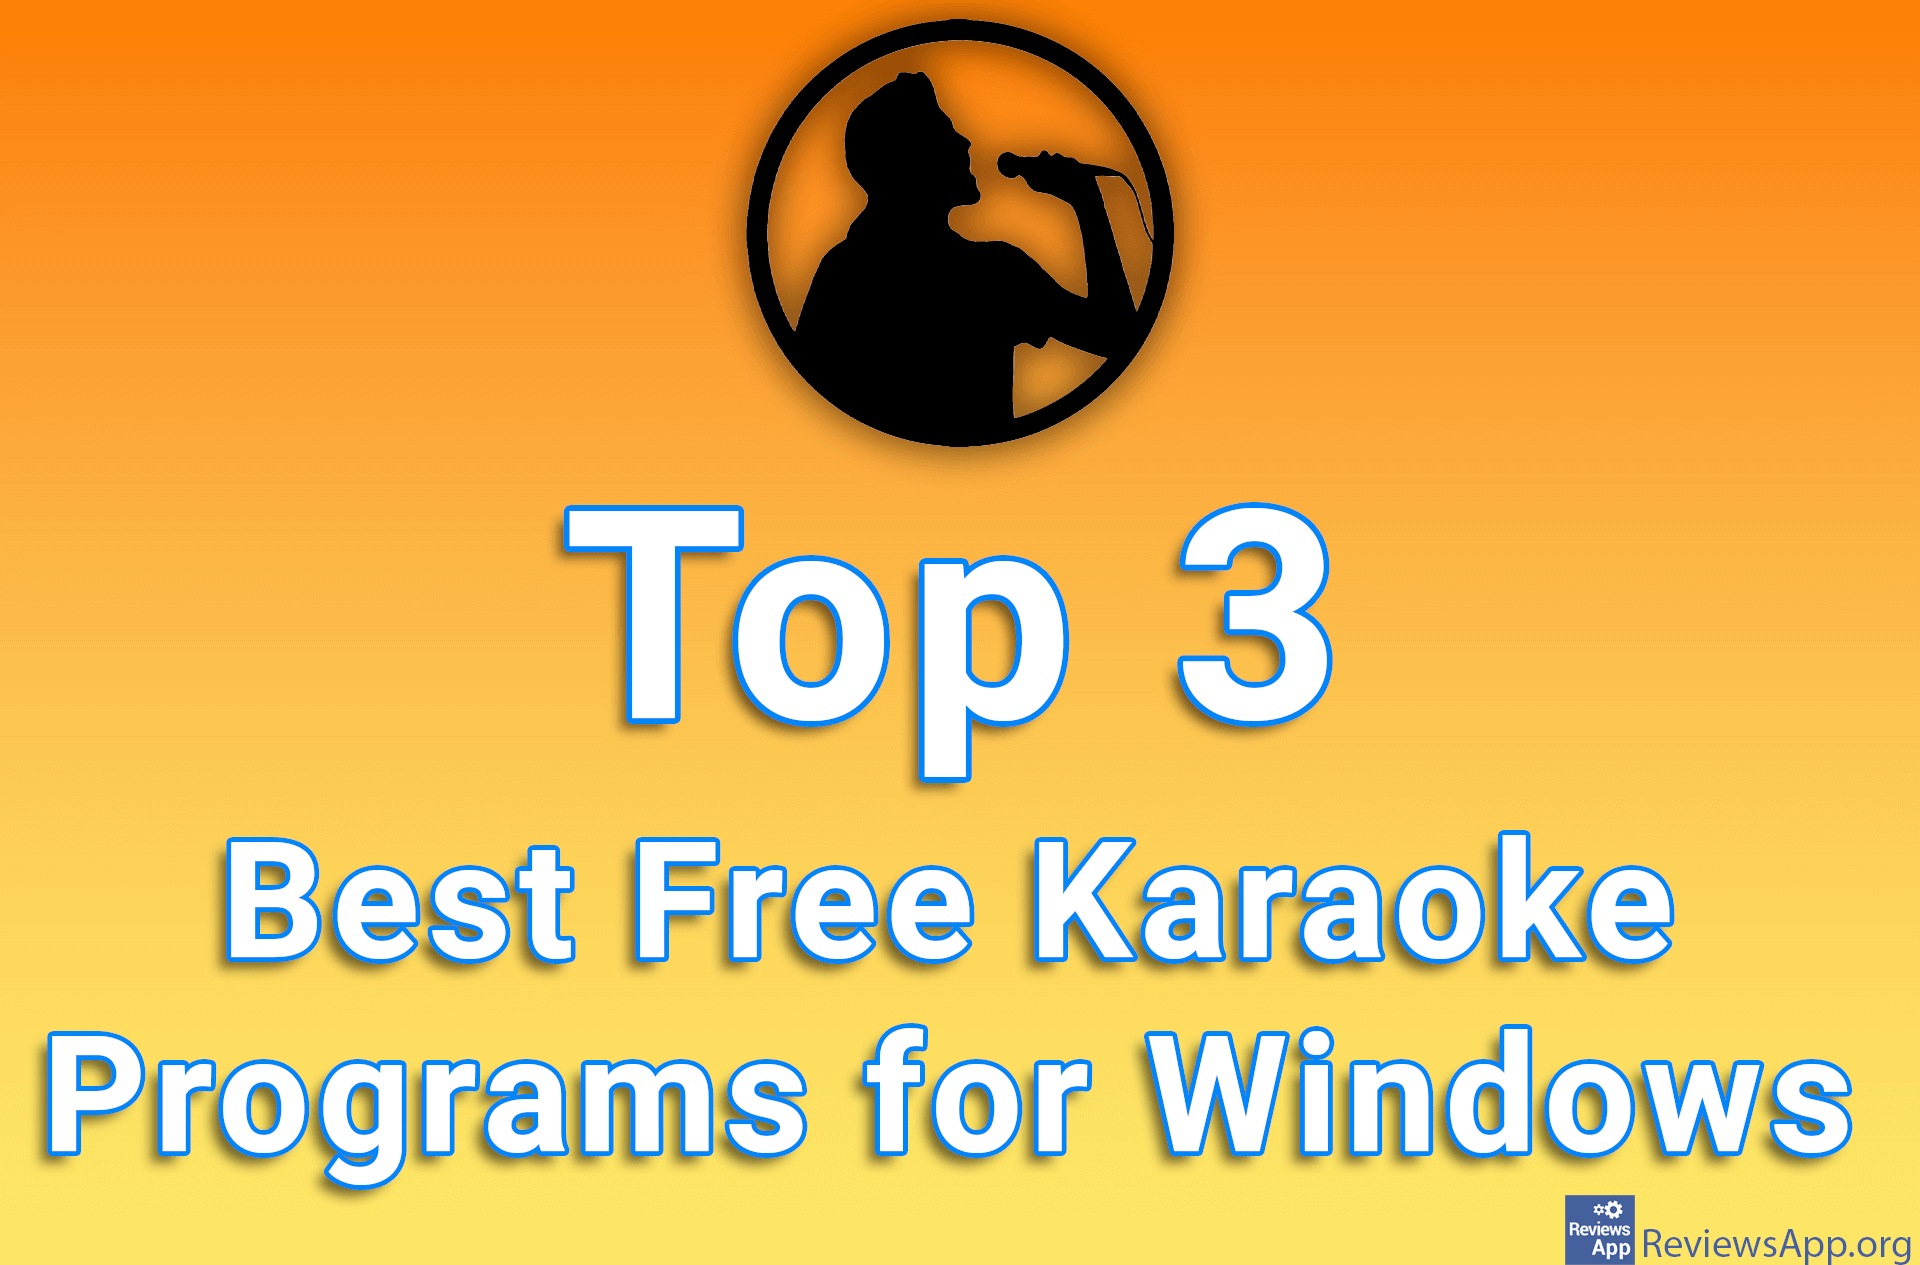 Top 3 Best Free Karaoke Programs for Windows